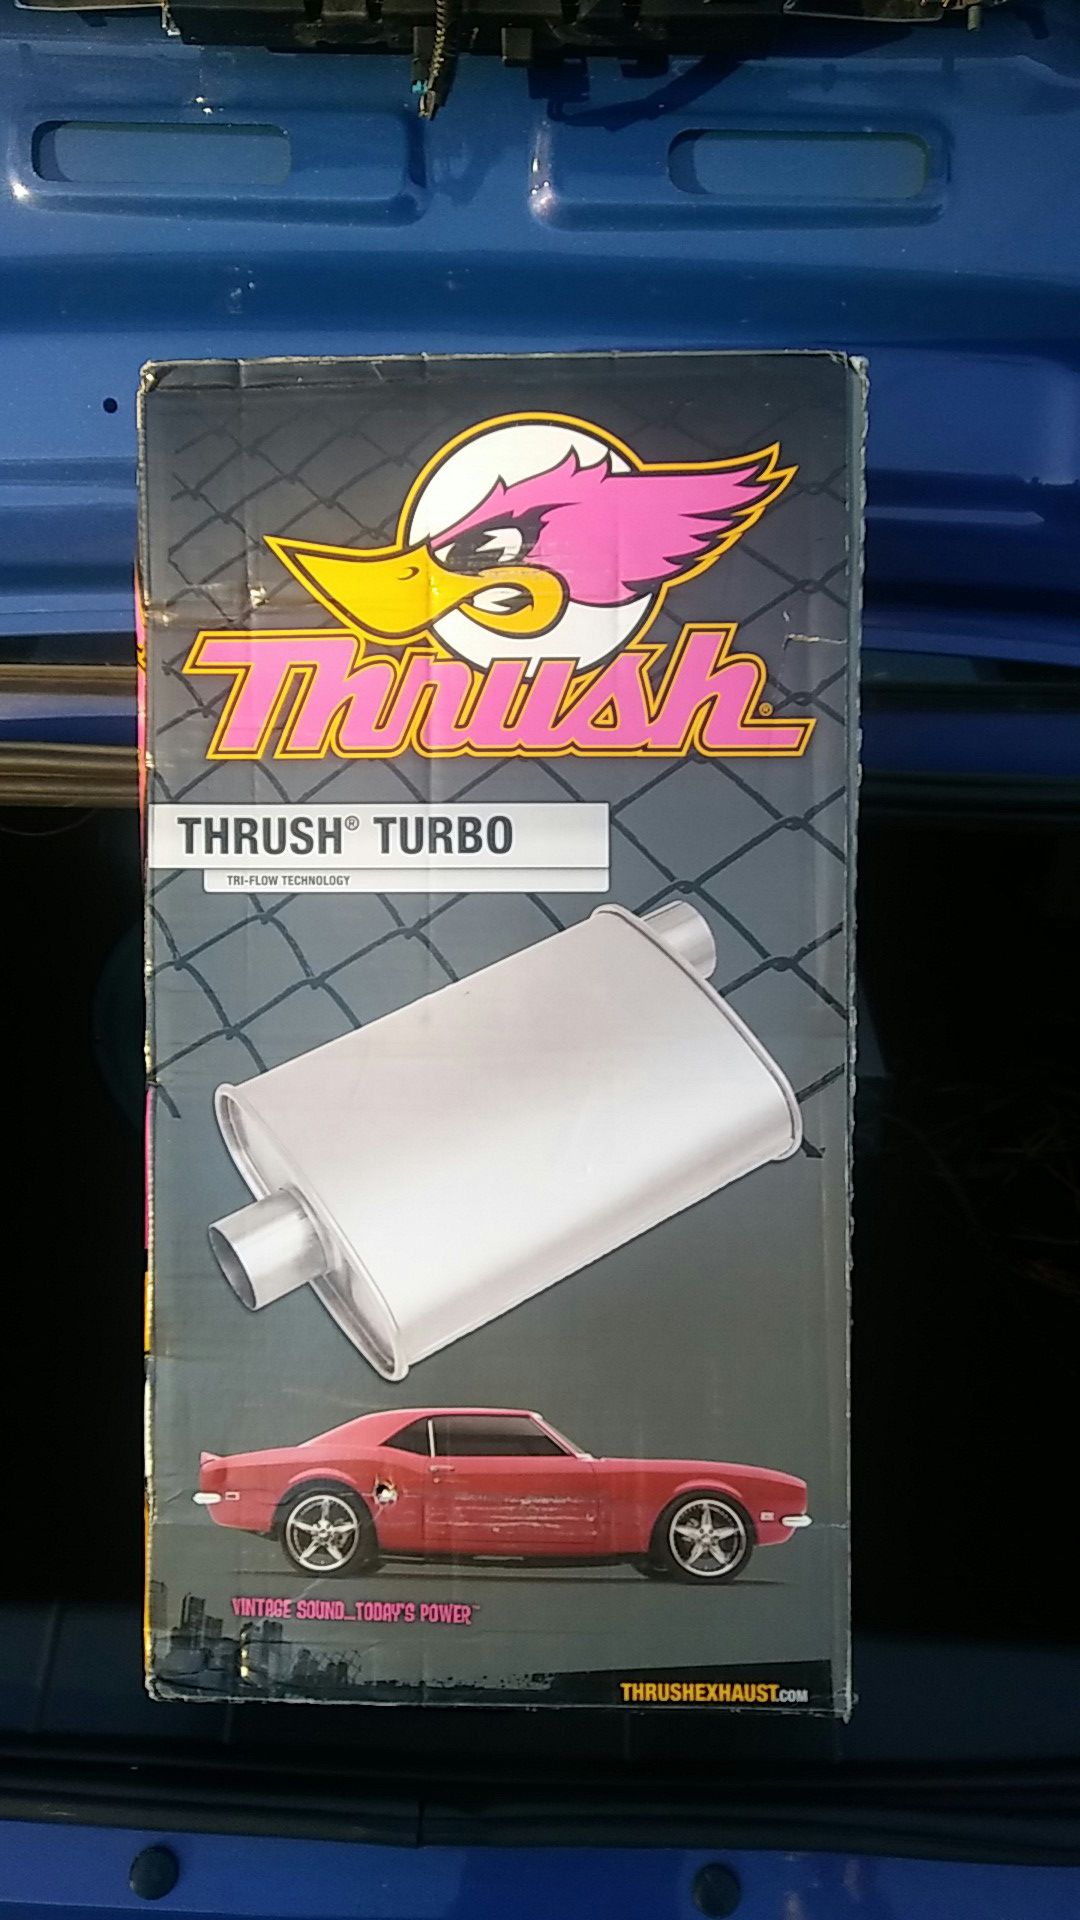 Thrush turbo